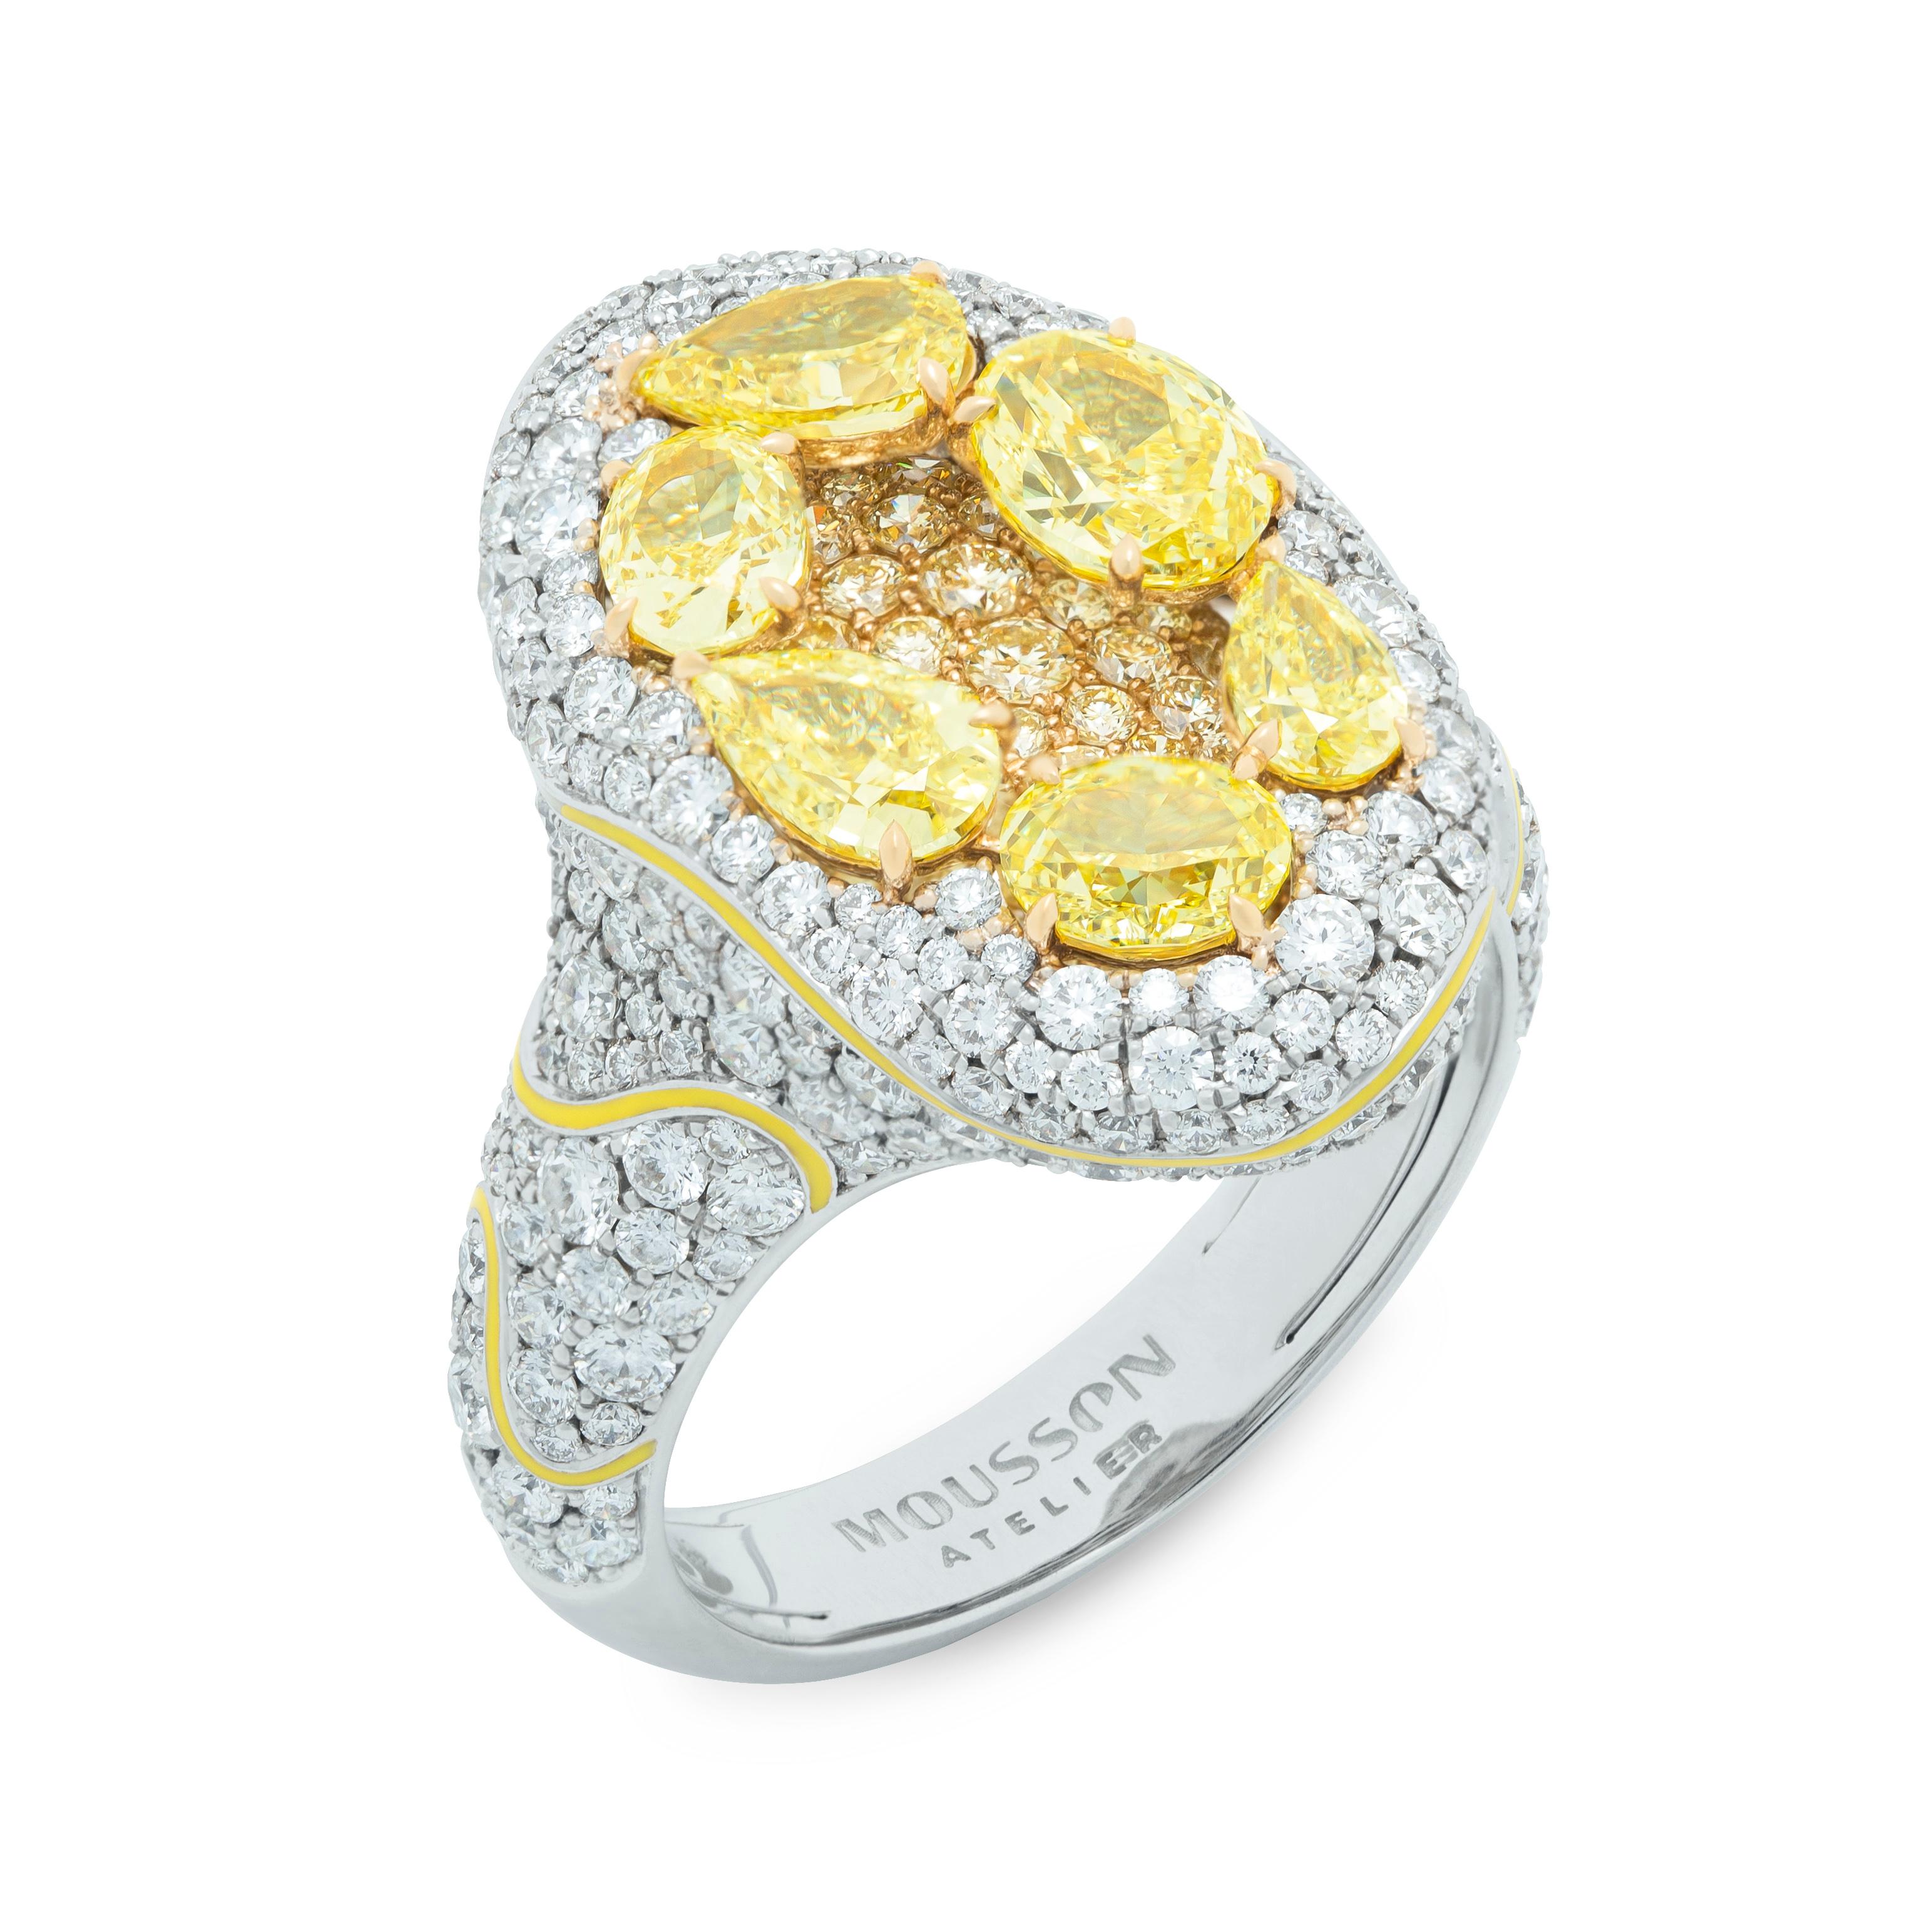 Gelbe Diamanten Weiße Diamanten Emaille 18 Karat Weiß  und Gelbgold High Jewelry Ring

Dieser wunderschöne Ring mit 6 birnenförmigen und ovalen gelben Fancy-Diamanten von 2,20 Karat in der Mitte und 73 kleinen gelben Diamanten ist in 18 Karat